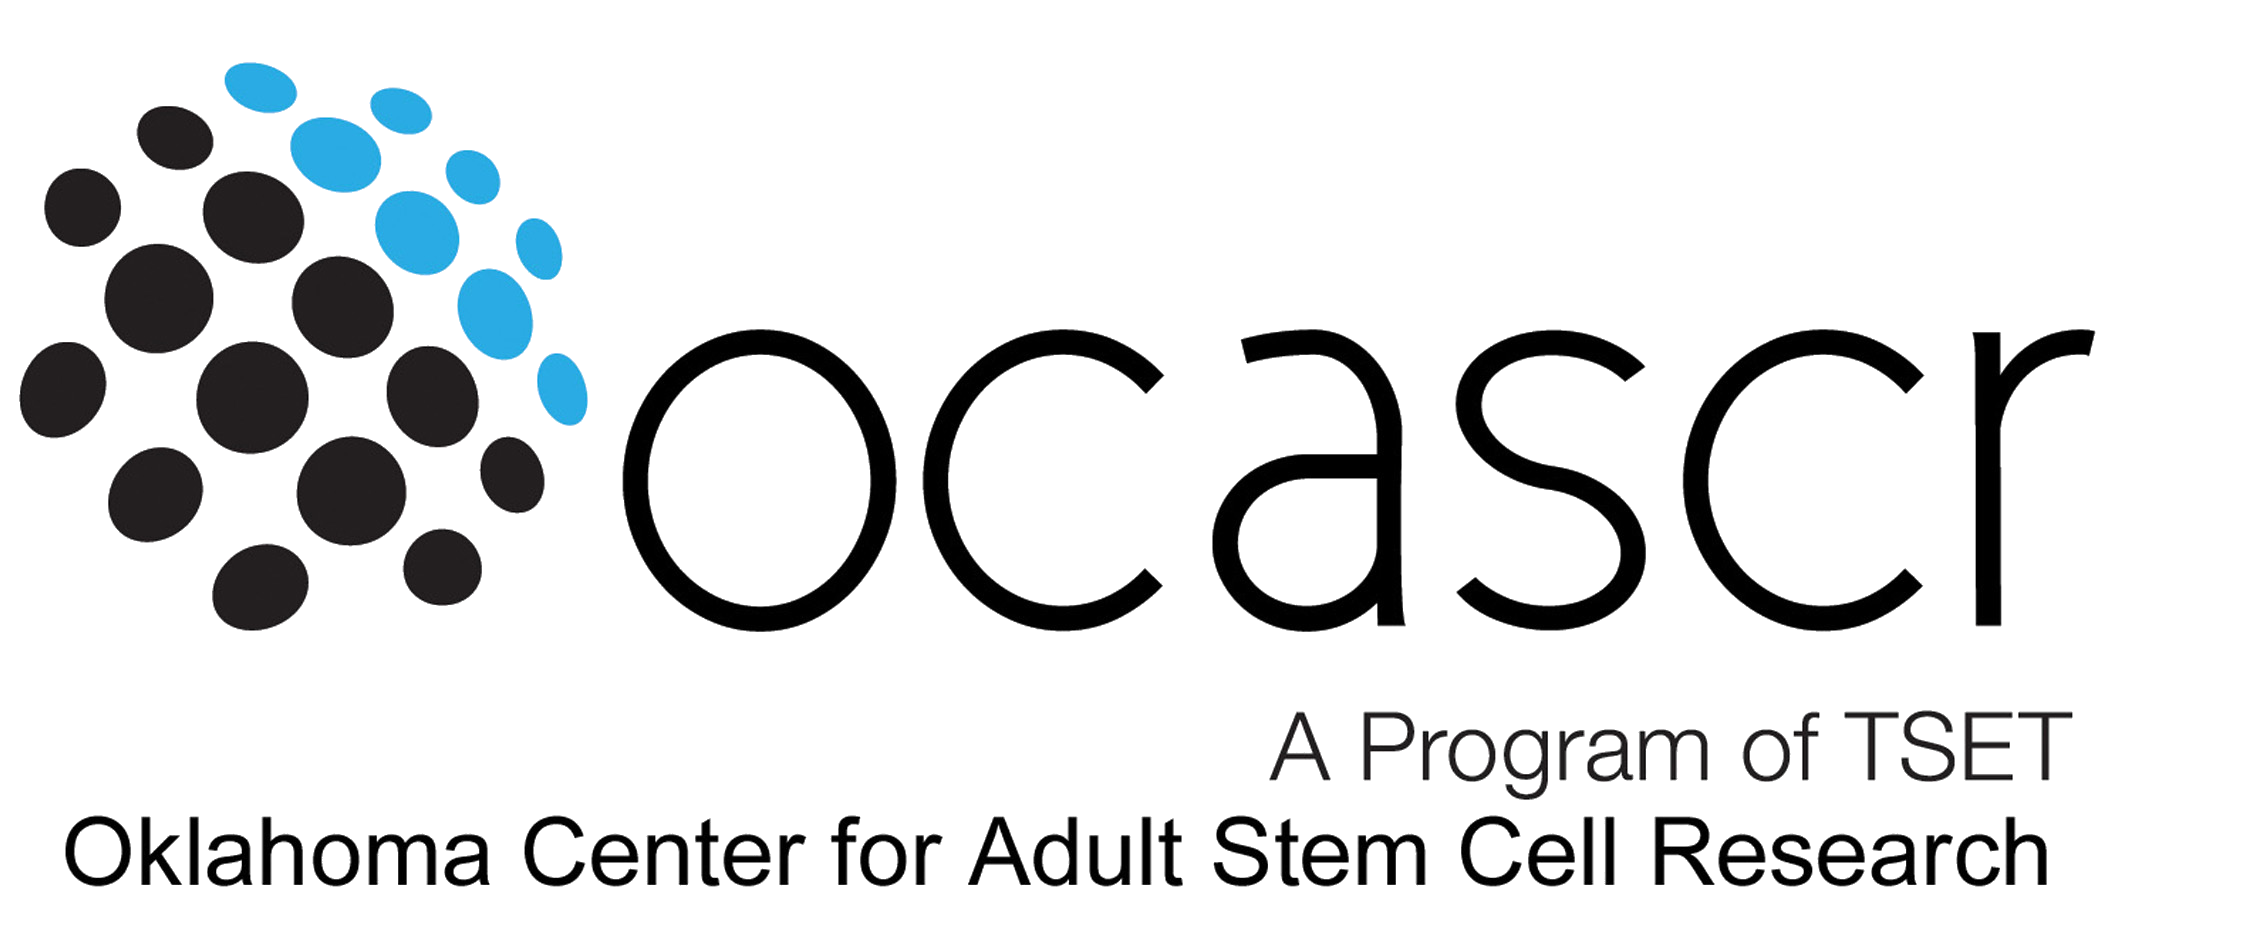 OCASCR Logo